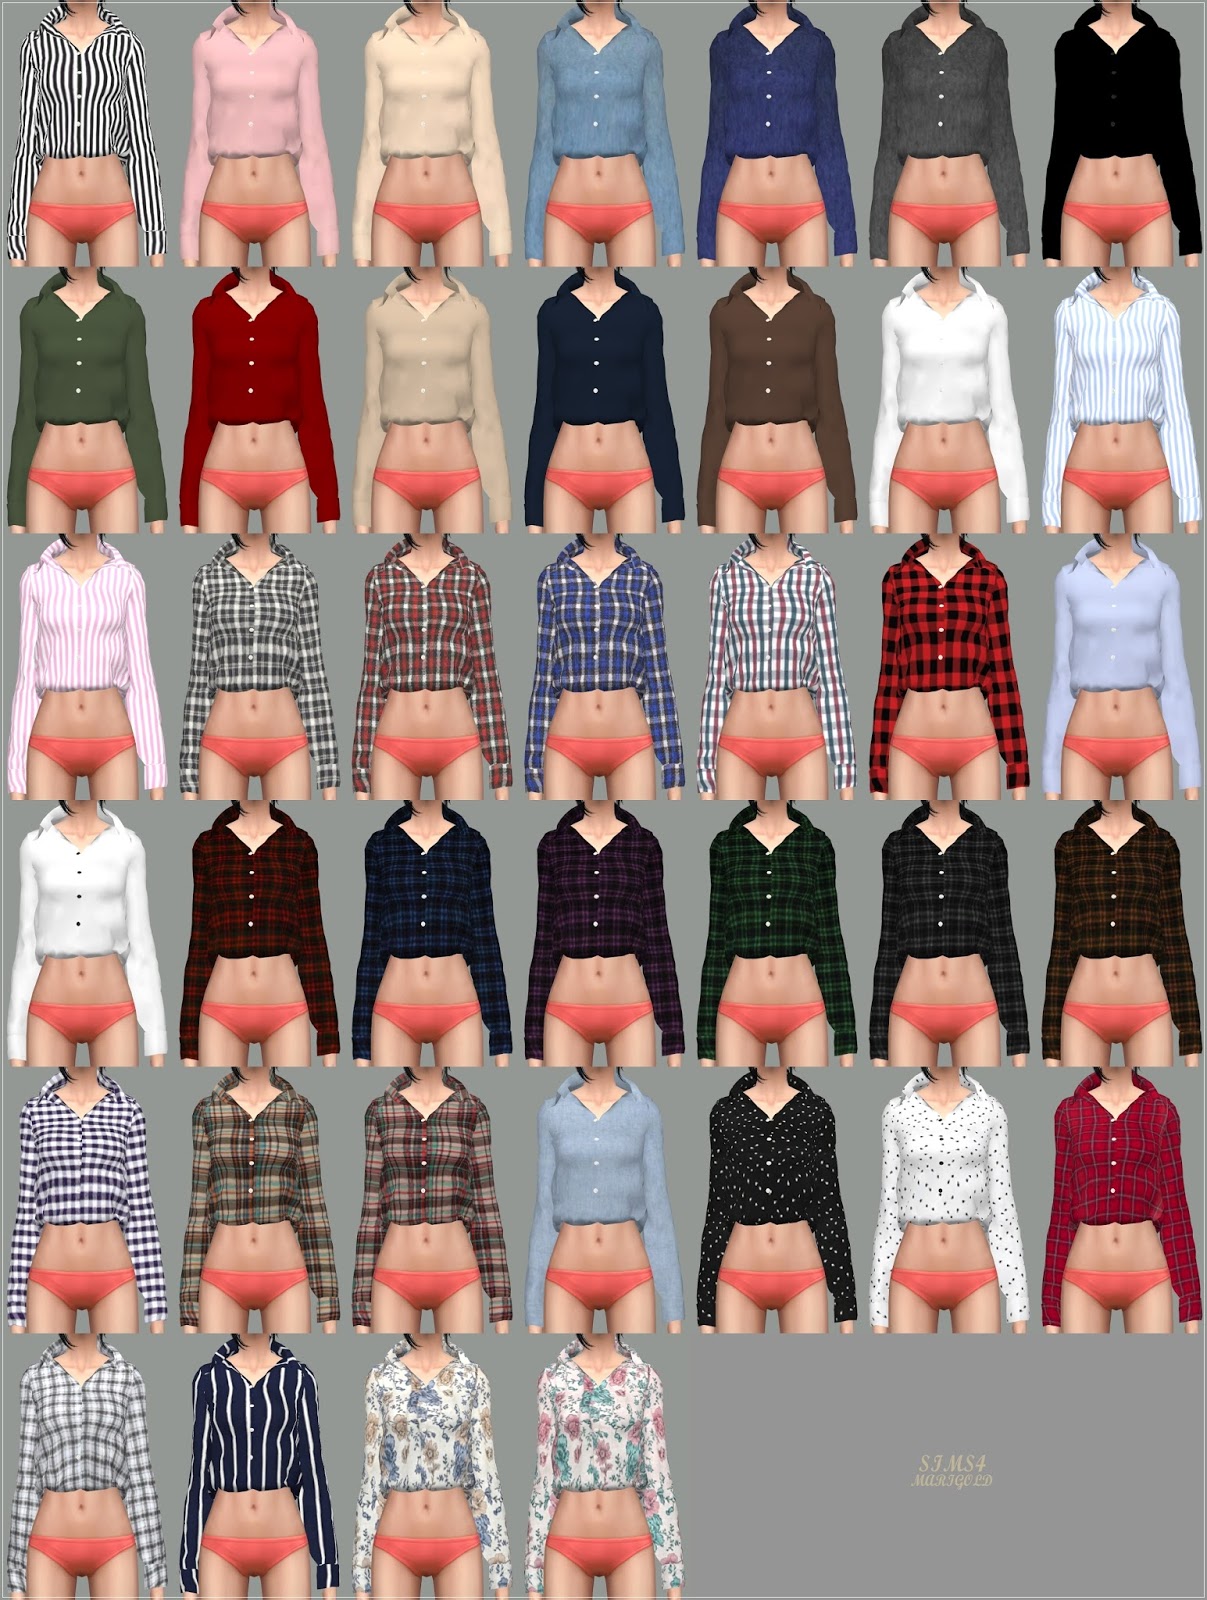 одежда -  The Sims 4: Женская повседневная одежда  - Страница 13 64%2B%25281%2529-tile